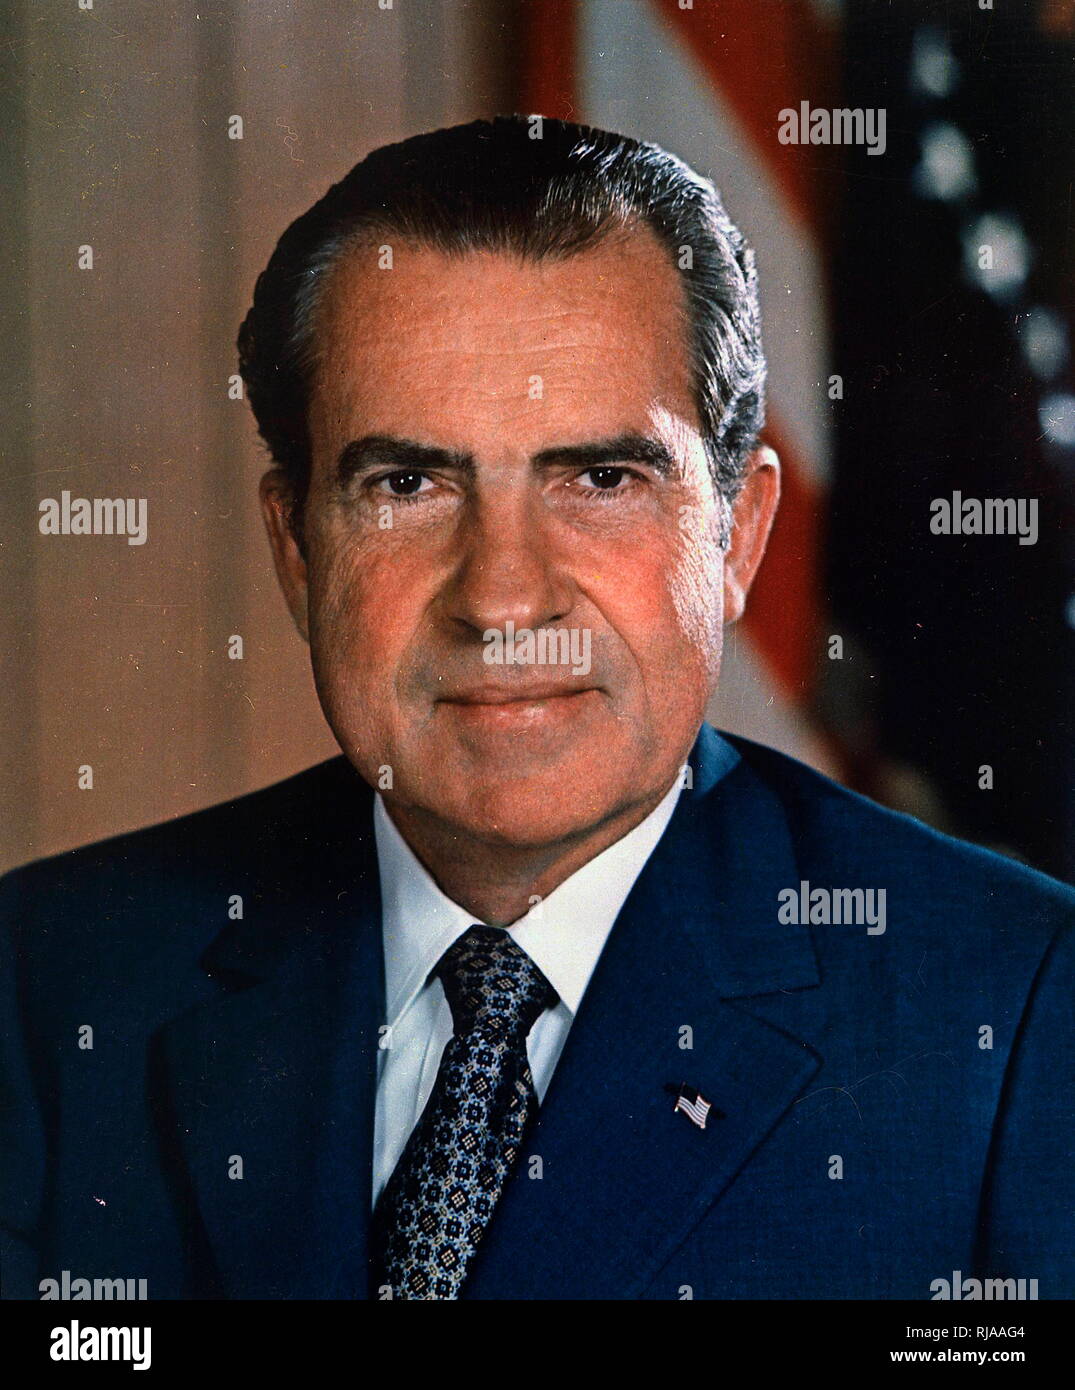 Richard Milhous Nixon (1913-1994), der 37. Präsident der Vereinigten Staaten, das von 1969 bis 1974. Er sein Amt, der einzige US-Präsident, dies zu tun. Zuvor war er als 36. Der Vizepräsident der Vereinigten Staaten von 1953 bis 1961 gedient, und zuvor als US-Vertreter und auch Senator aus Kalifornien. Stockfoto